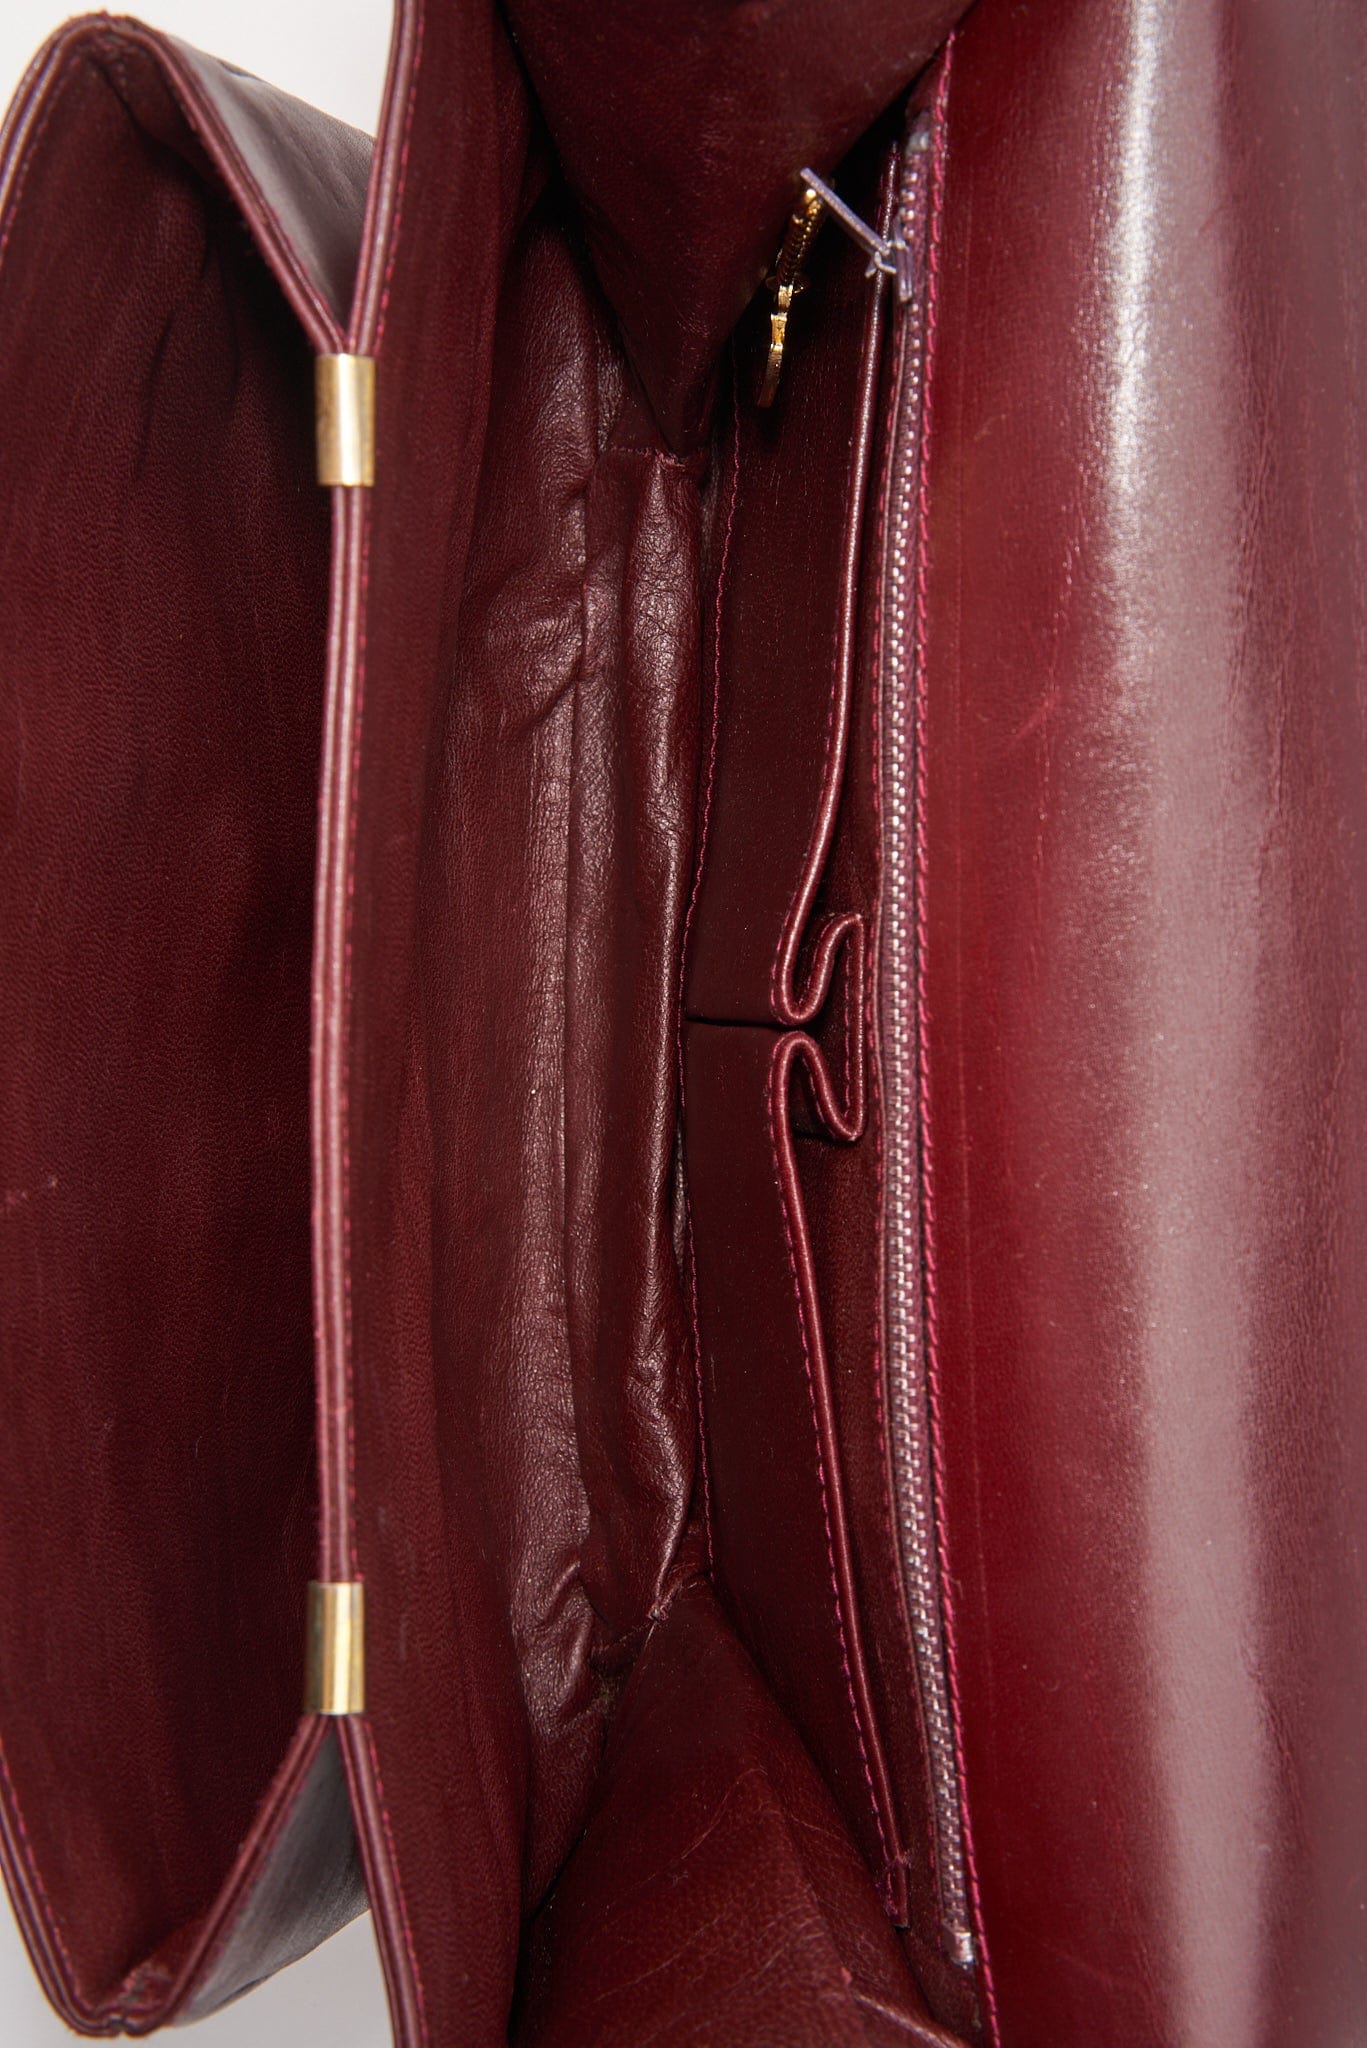 Vintage Celine Sulky Box Bag - Burgundy Leather